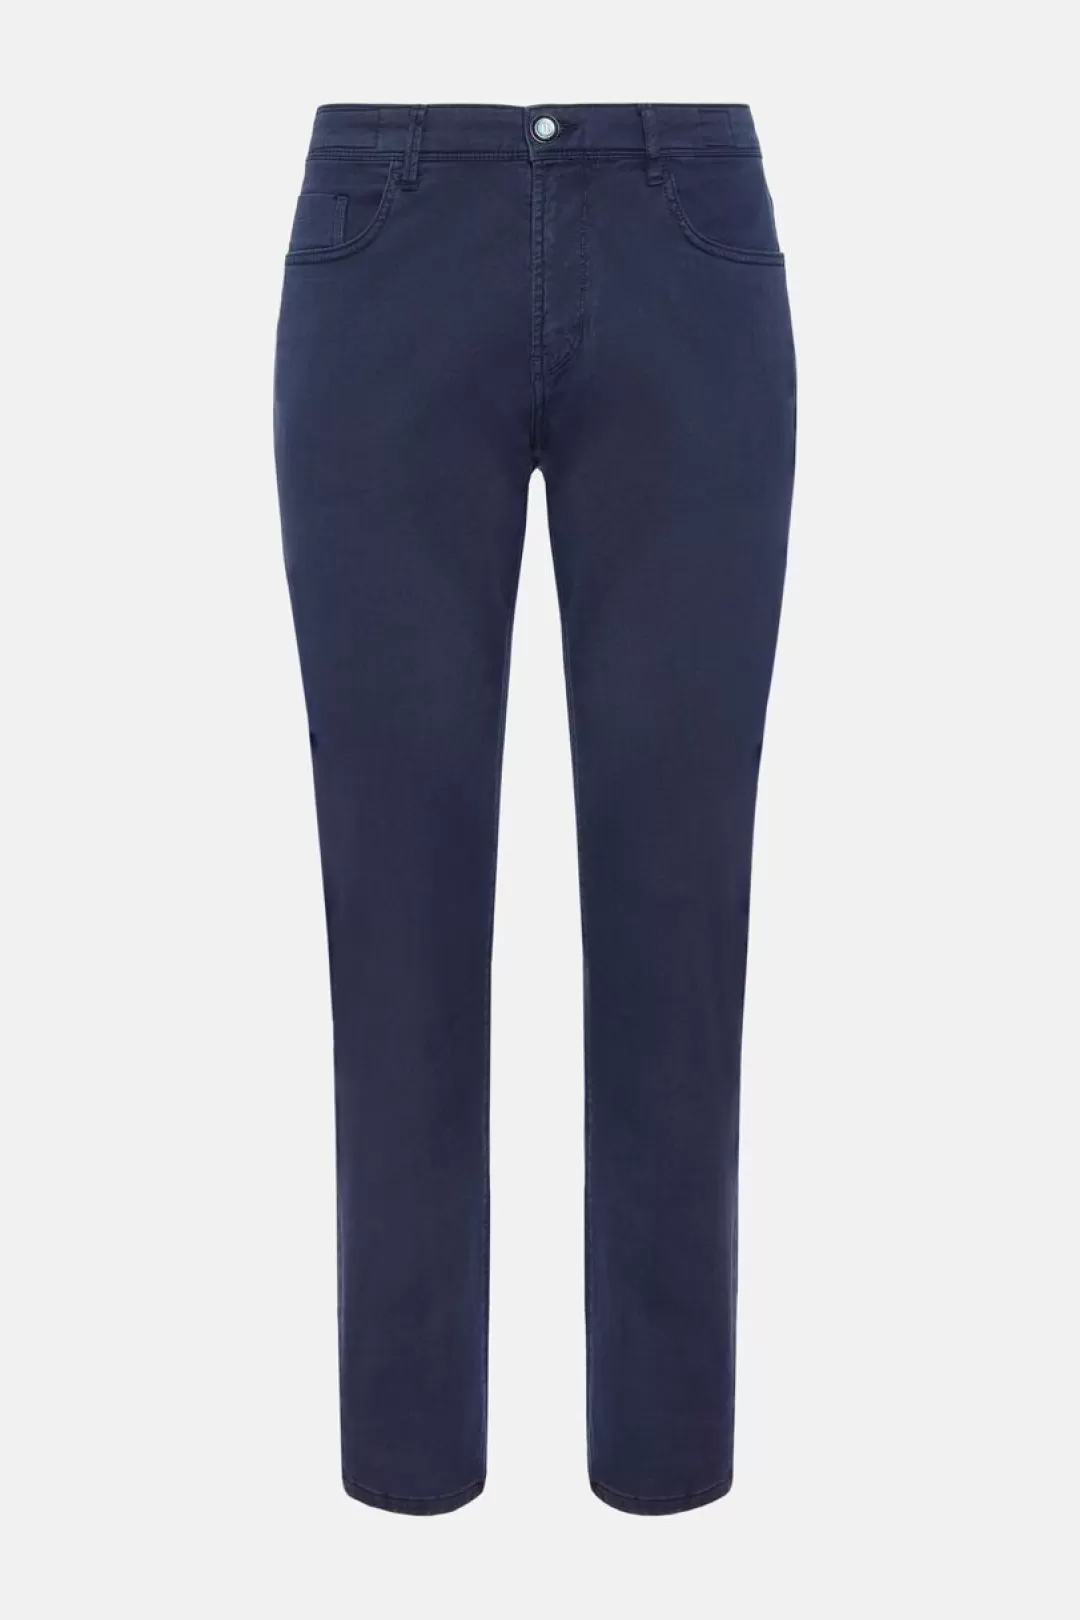 Boggi Jeans In Cotone Tencel Elasticizzato Blu Chiaro Hot